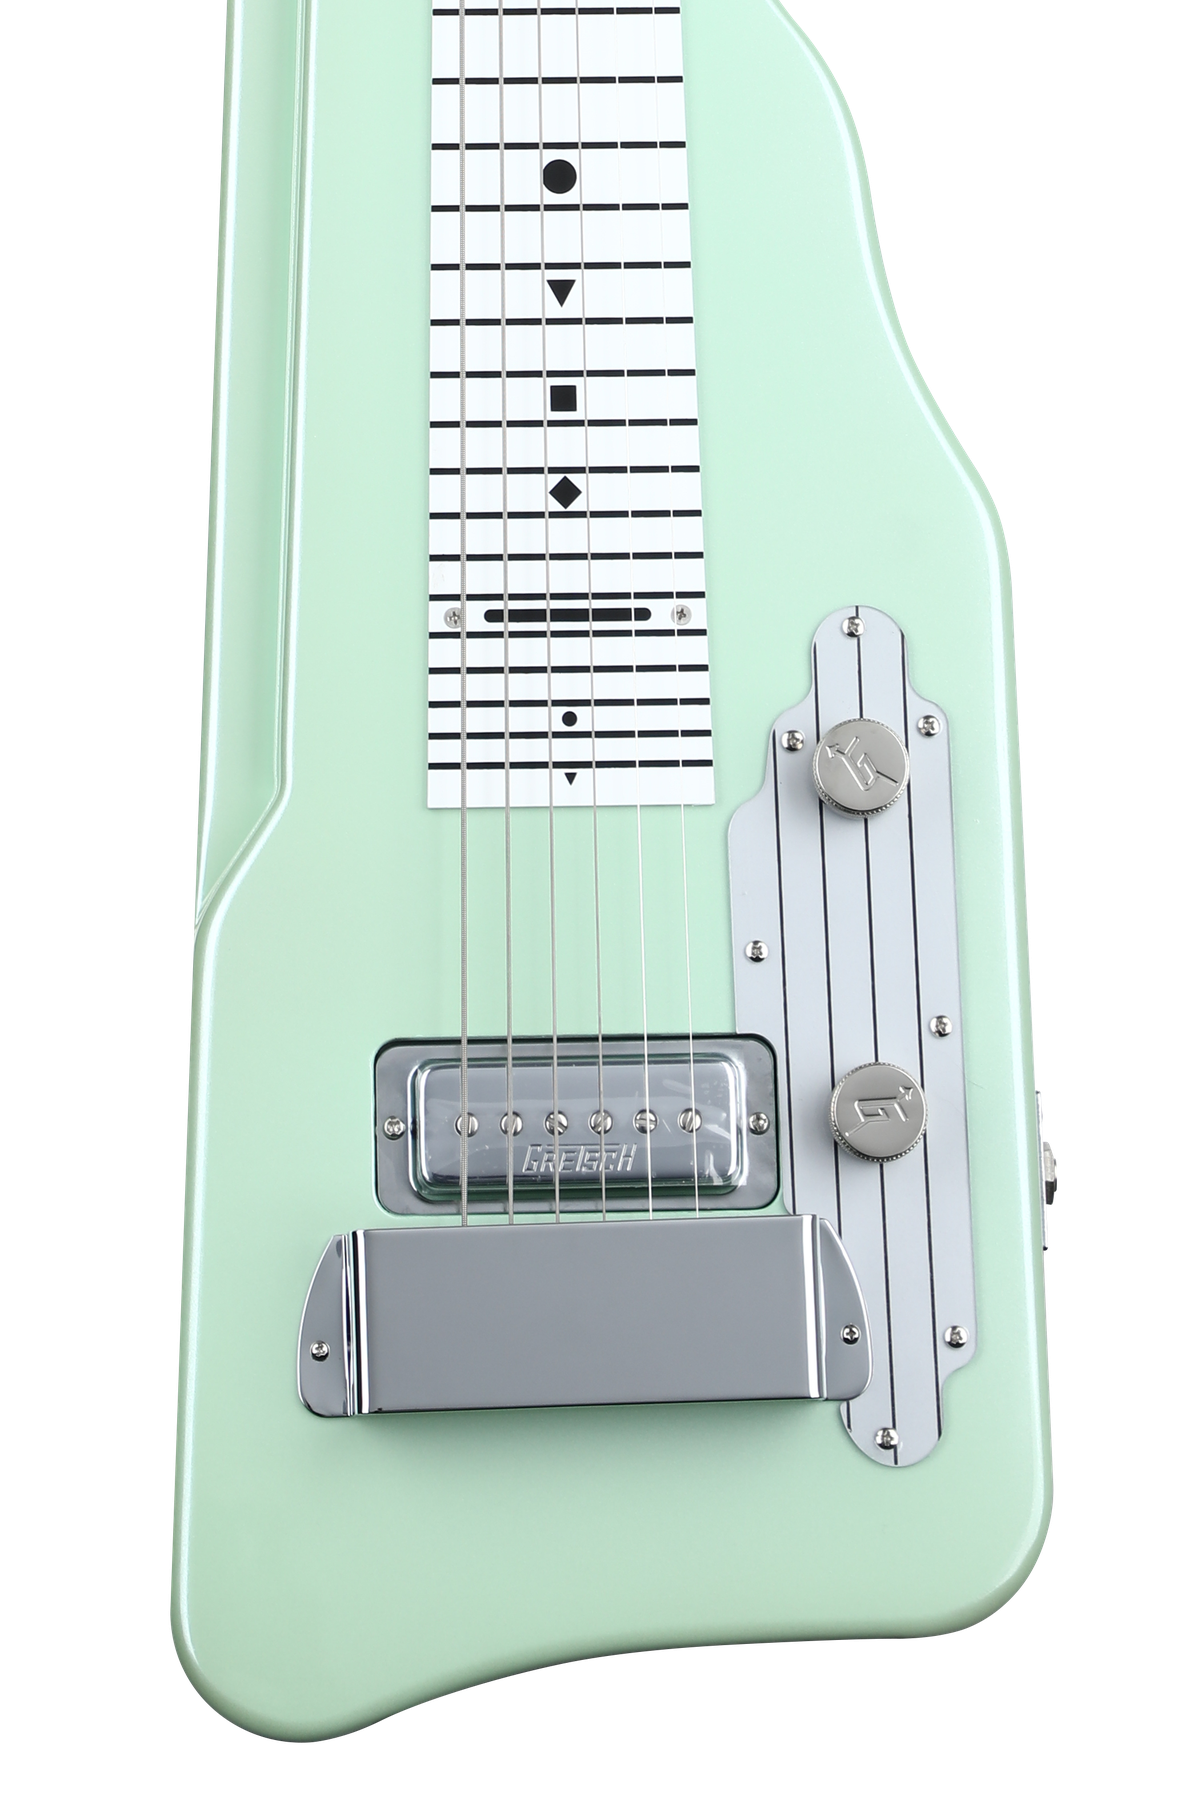 Bundled Item: Gretsch G5700 Electromatic Lap Steel Guitar - Broadway Jade